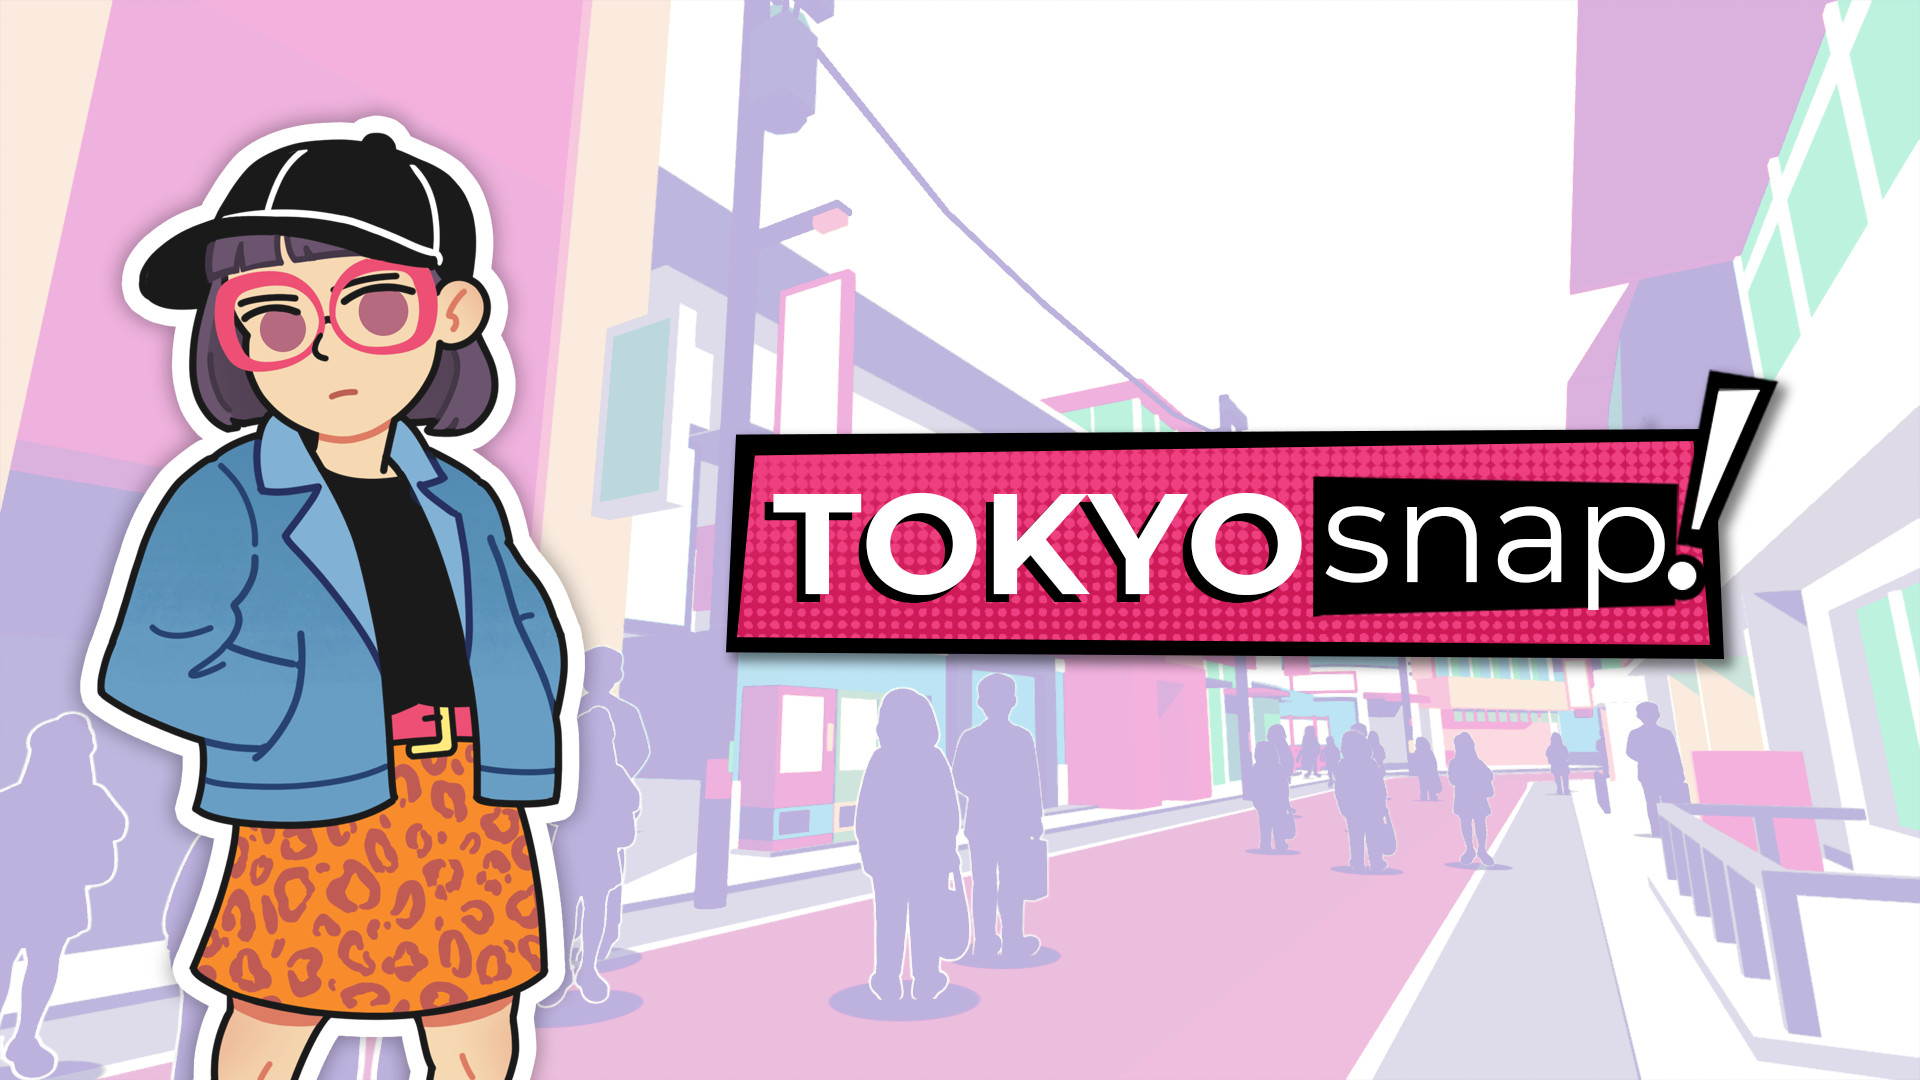 Tokyo Snap Free Download